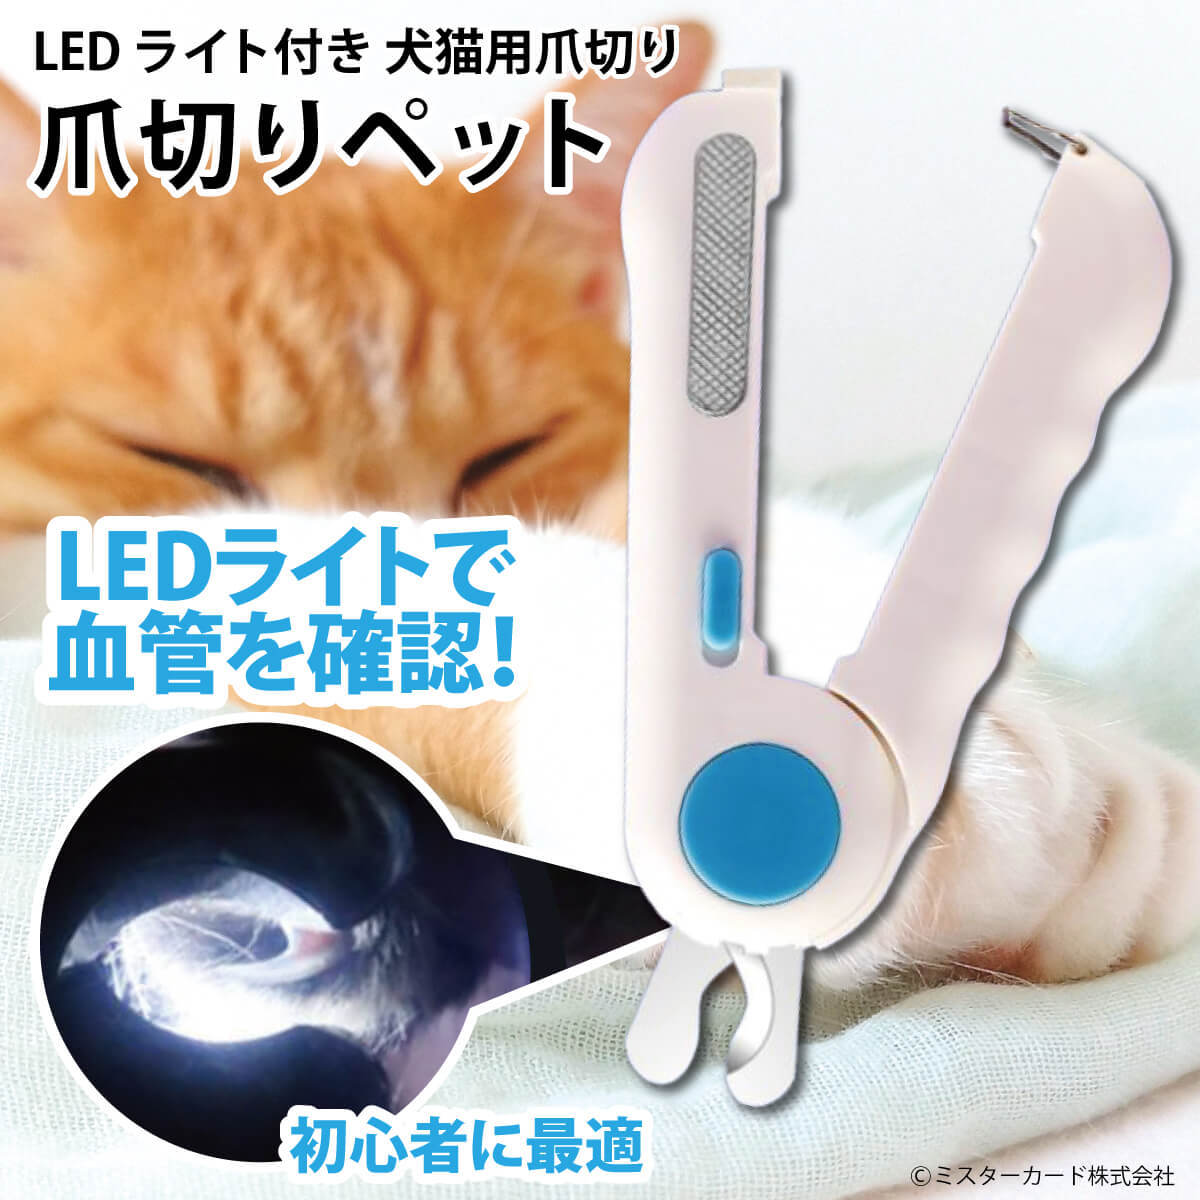 爪切りペット LEDライト付き 犬 猫 ペット用 爪きり ステンレス刃 血管 ニッパー式 ヤスリ付き 爪磨き 飛散防止 ネイルケア カプセルペット  MR-PETCL03 :MR-PETCL03:オールバイ - 通販 - Yahoo!ショッピング